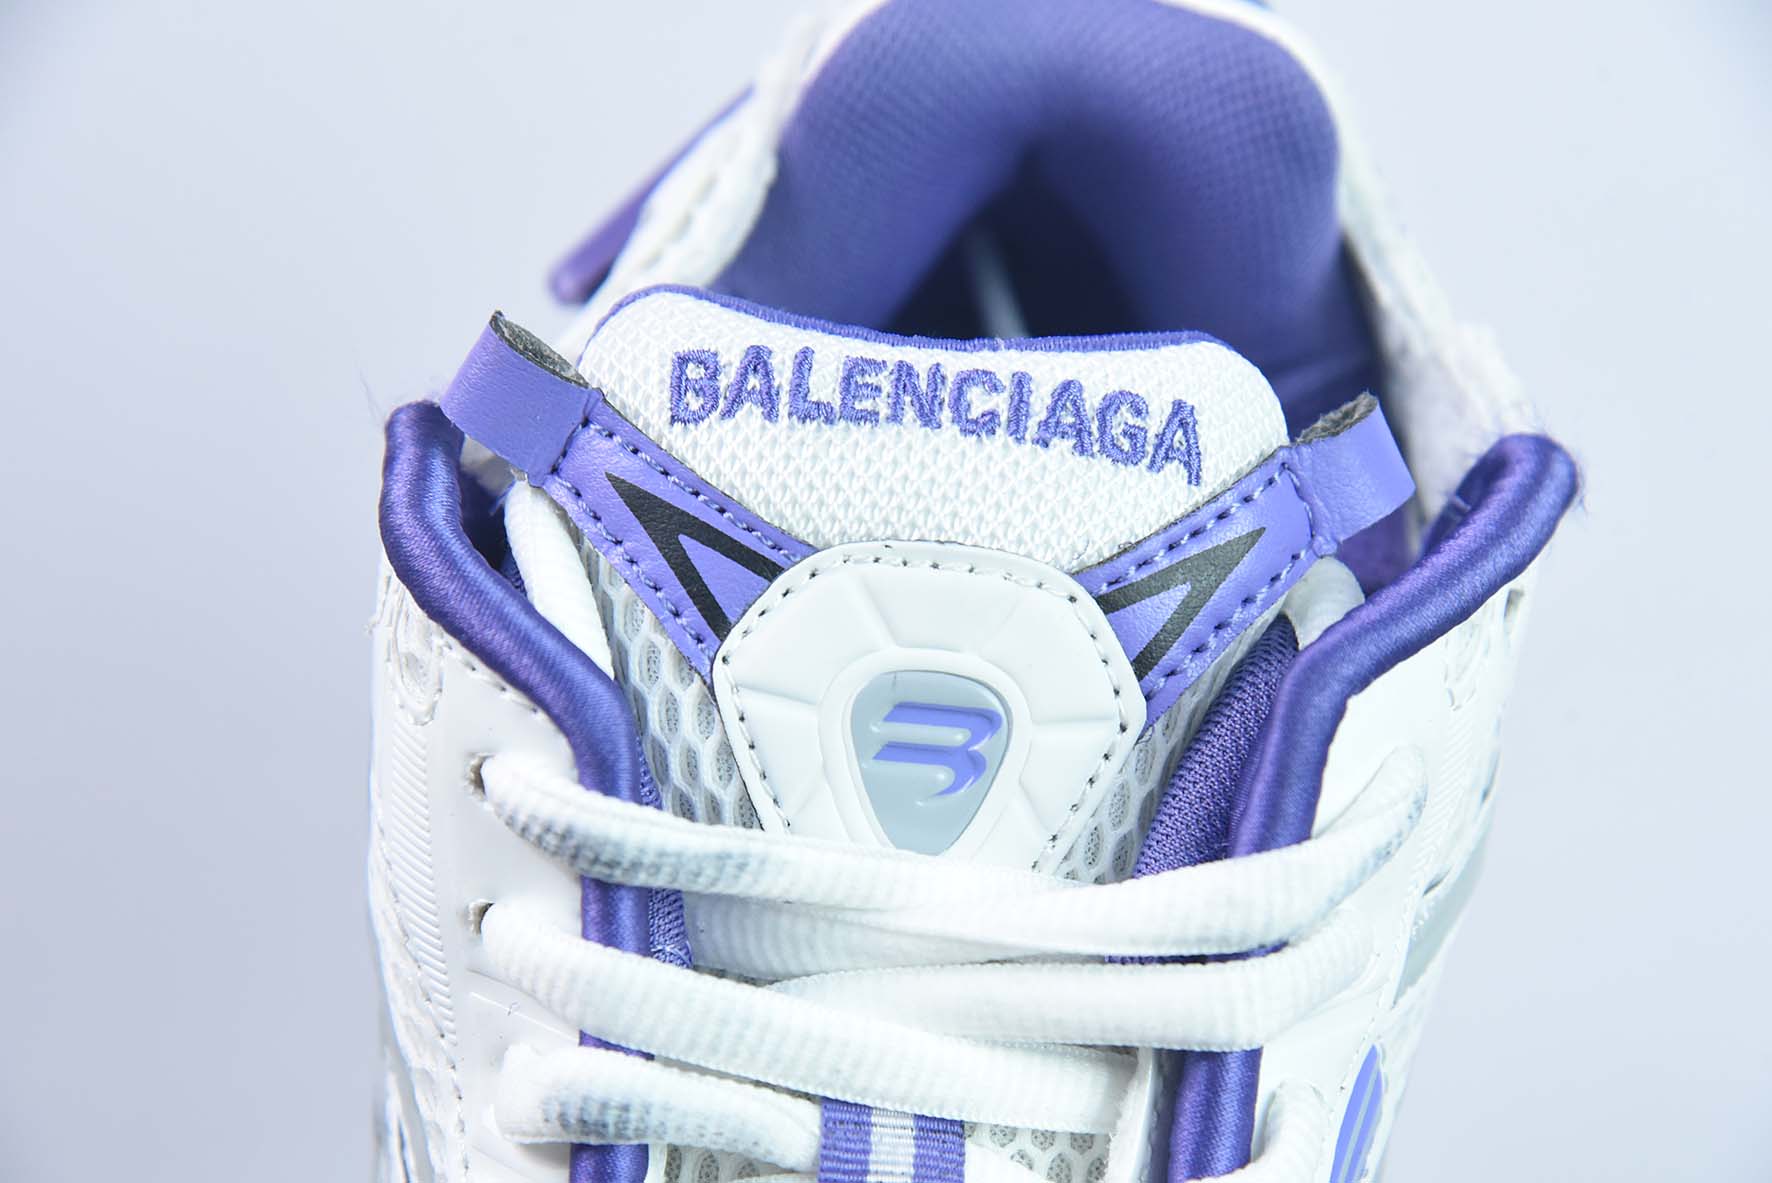 Balenciaga/巴黎世家 7.0系列复古老爹鞋/碳灰 深灰2023最新款